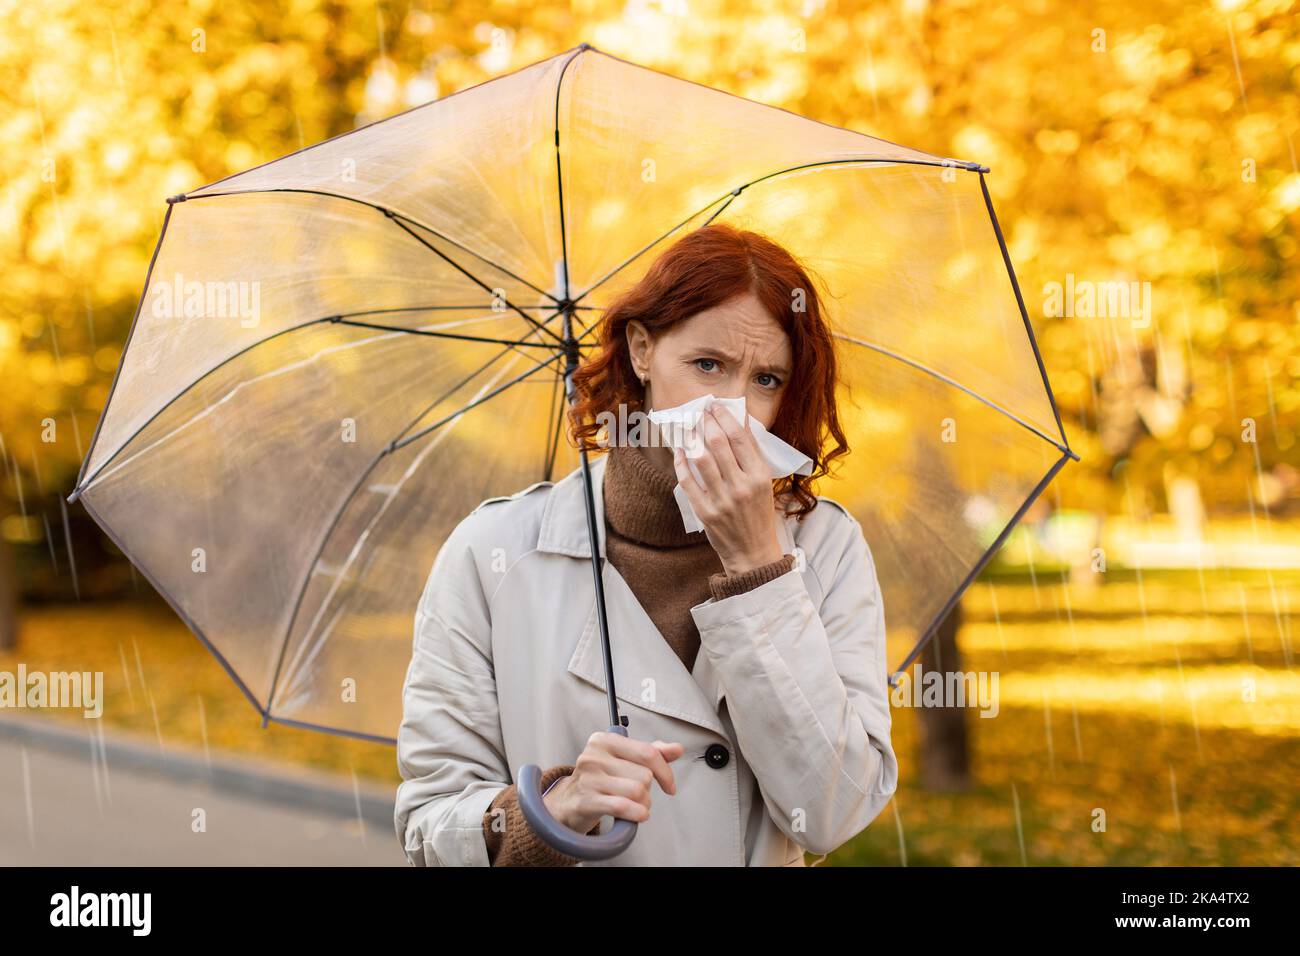 Traurige seriöse junge europäische rothaarige Dame im Regenmantel mit Regenschirm bläst ihre Nase auf Serviette, läuft im Regen Stockfoto